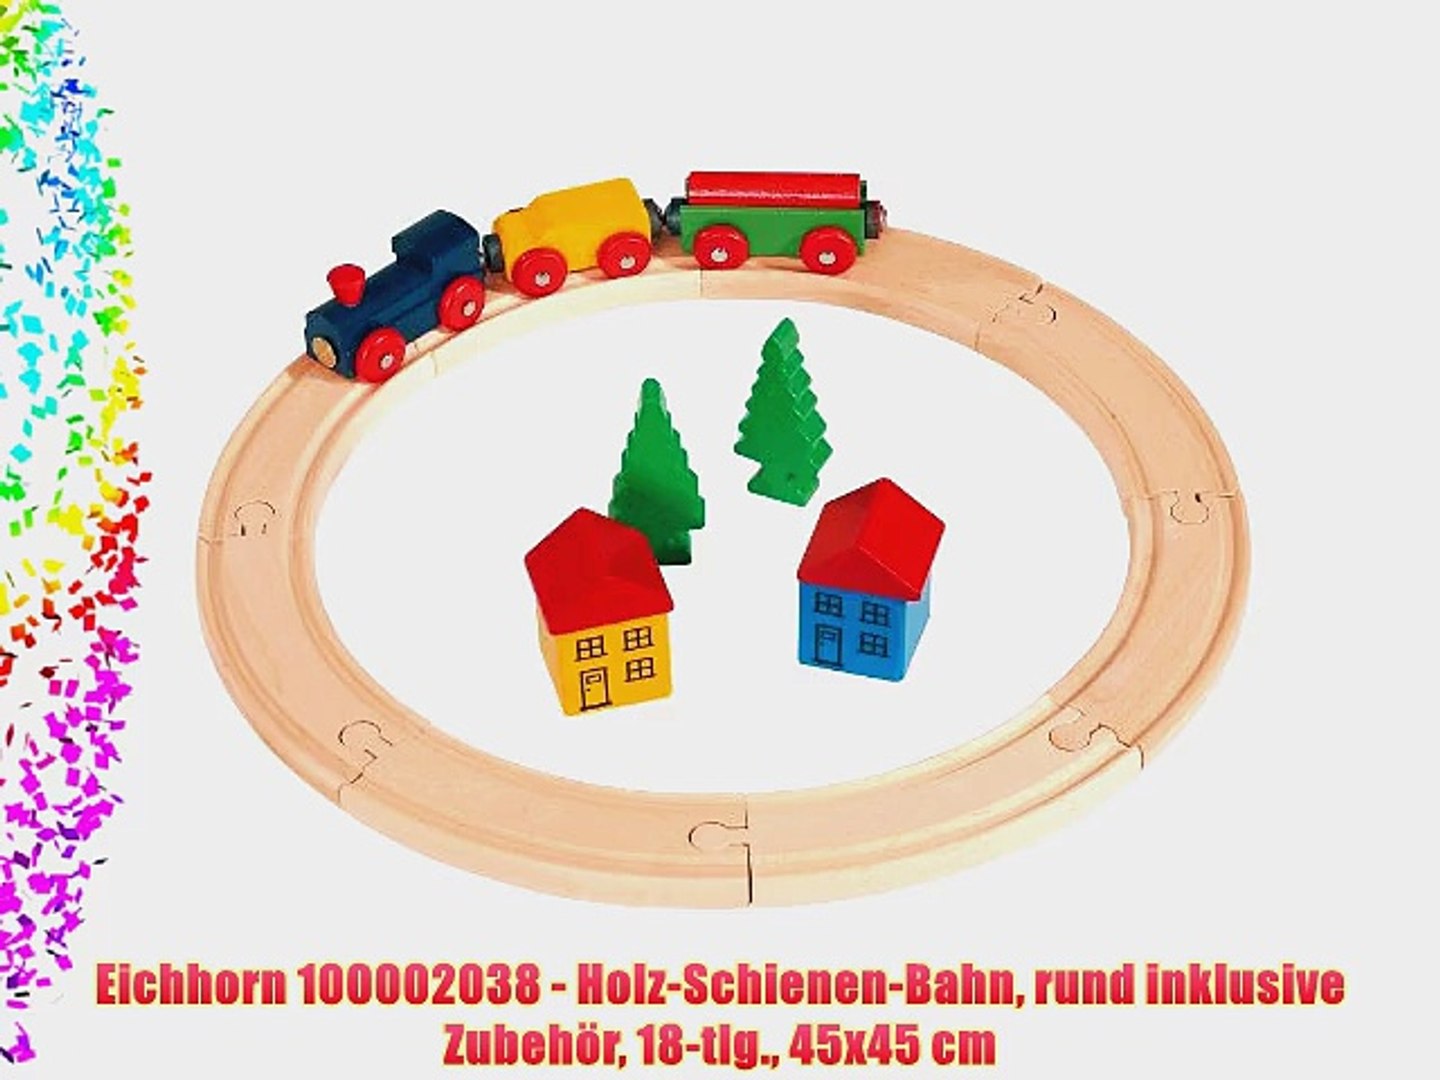 Eichhorn 100002038 - Holz-Schienen-Bahn rund inklusive Zubeh?r 18-tlg.  45x45 cm - video dailymotion